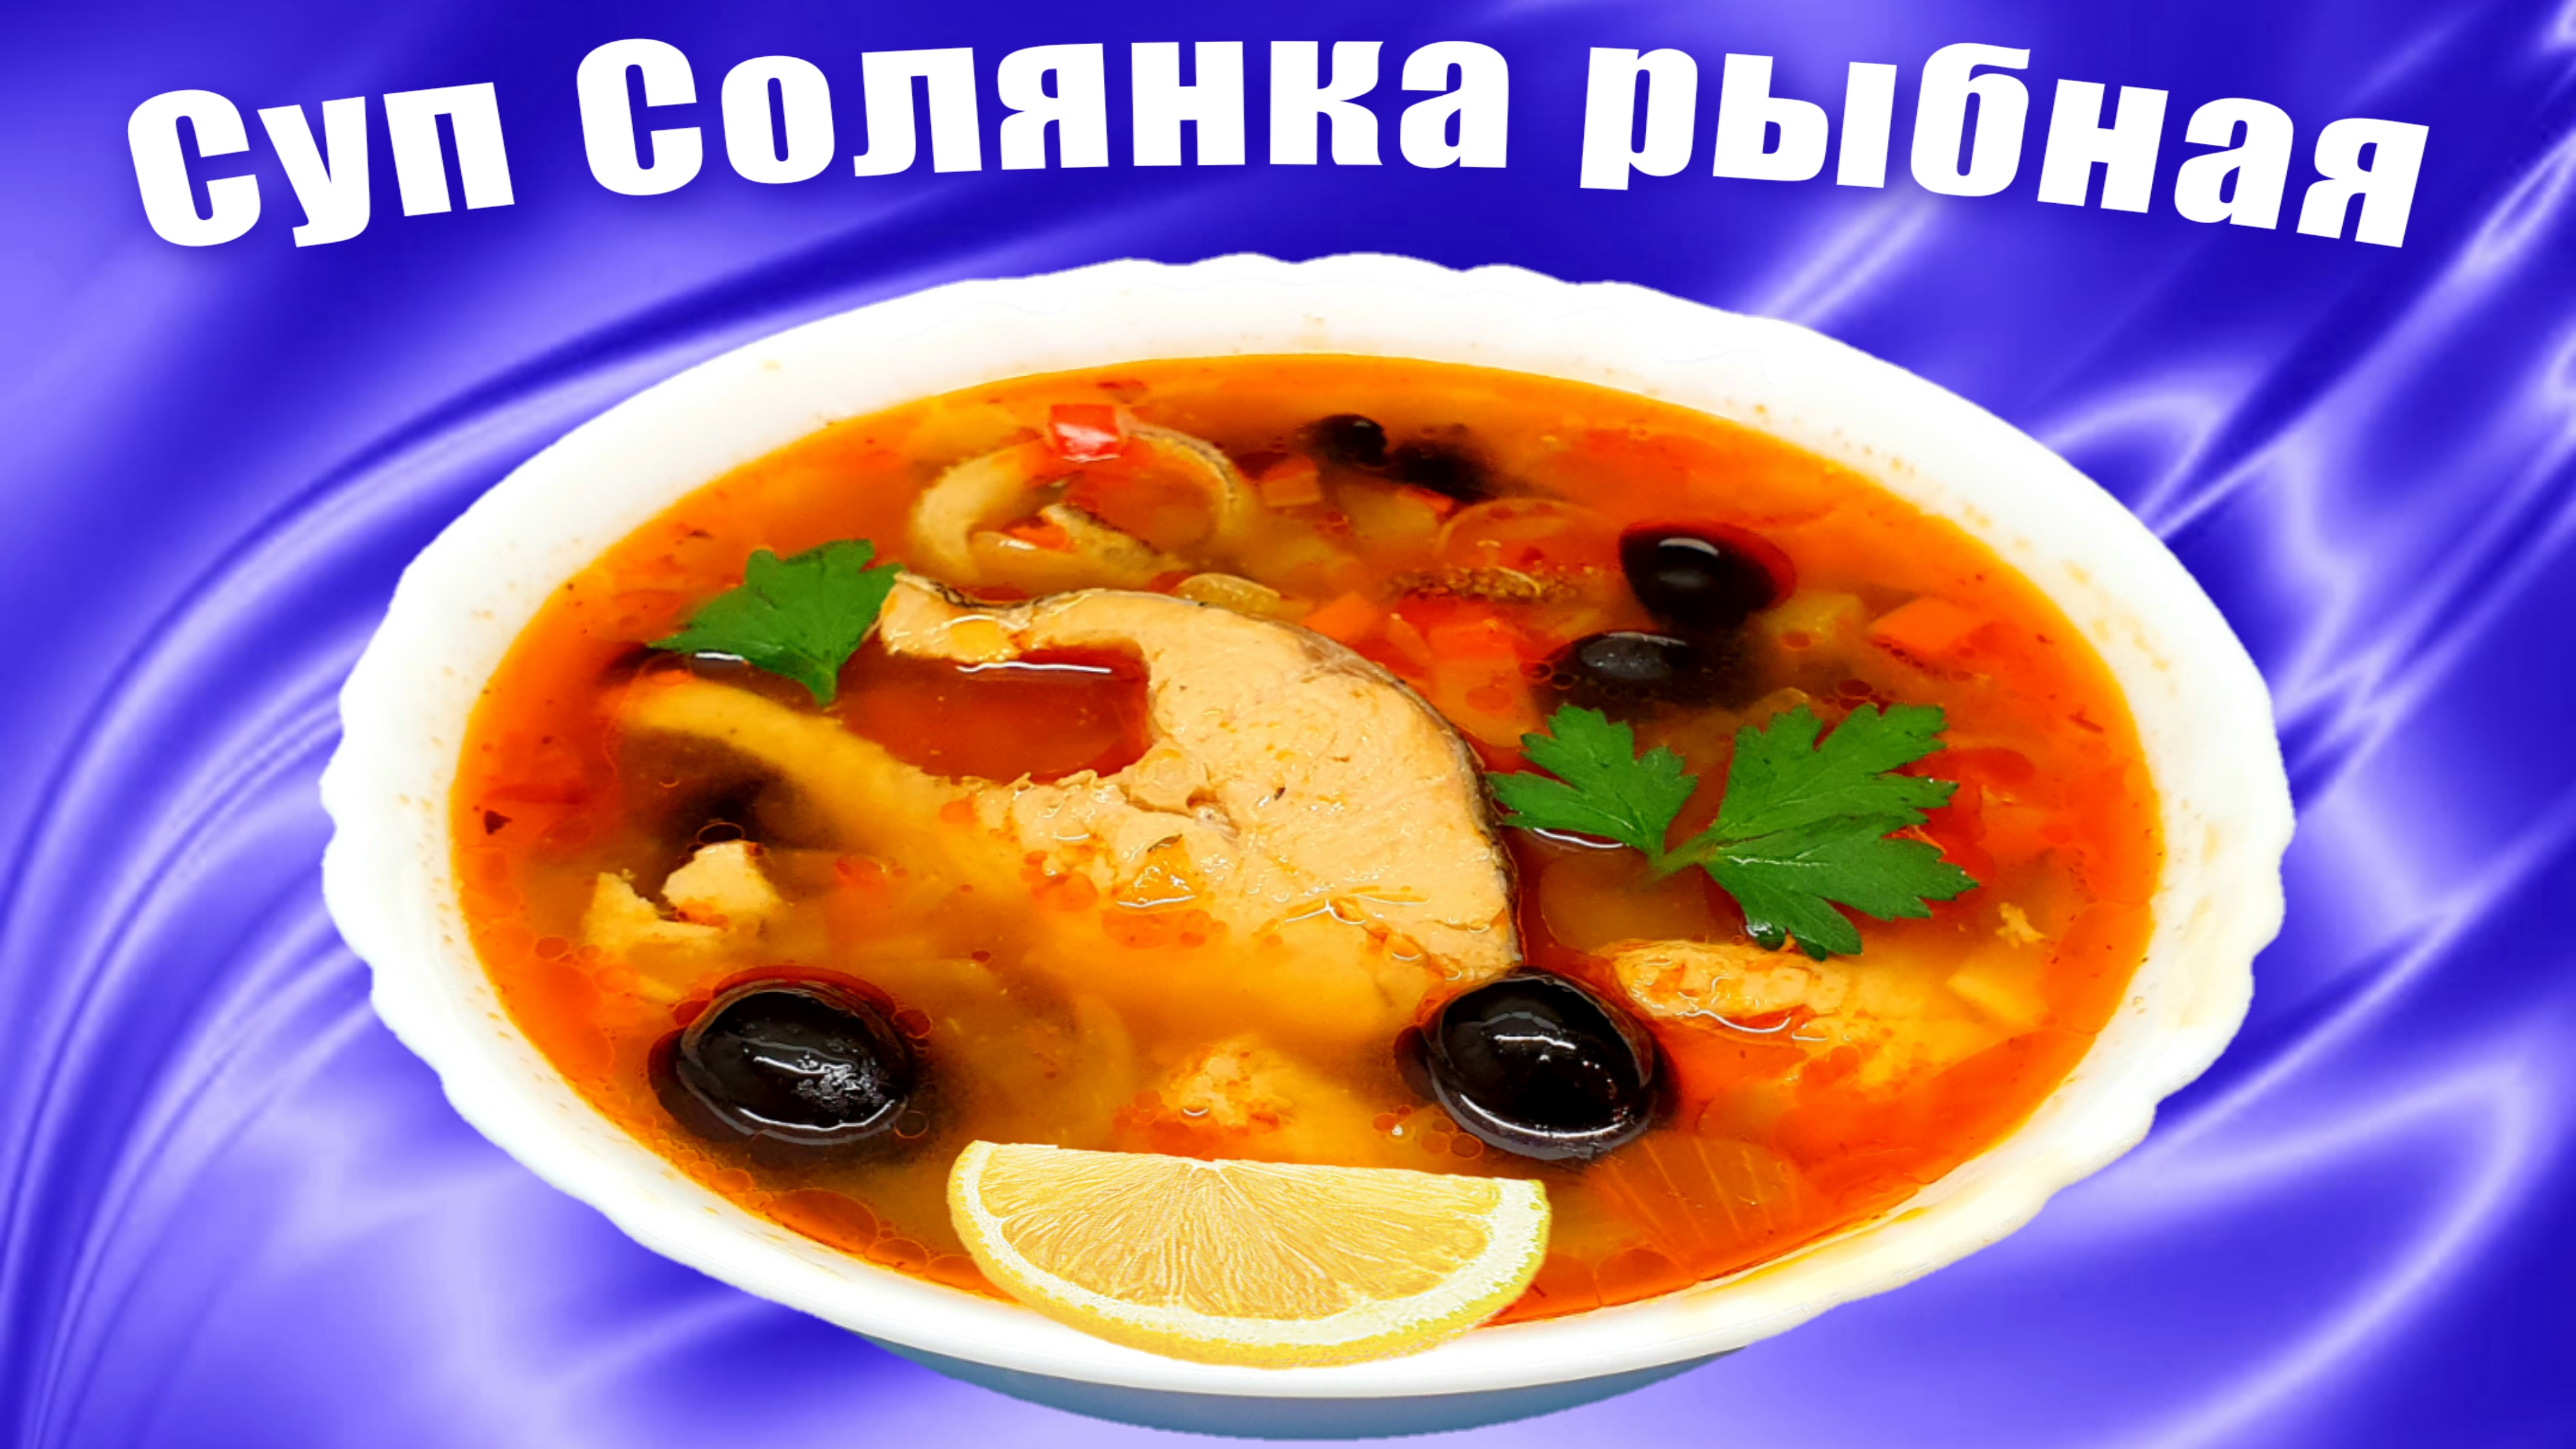 Рыбная солянка - Рыбный суп